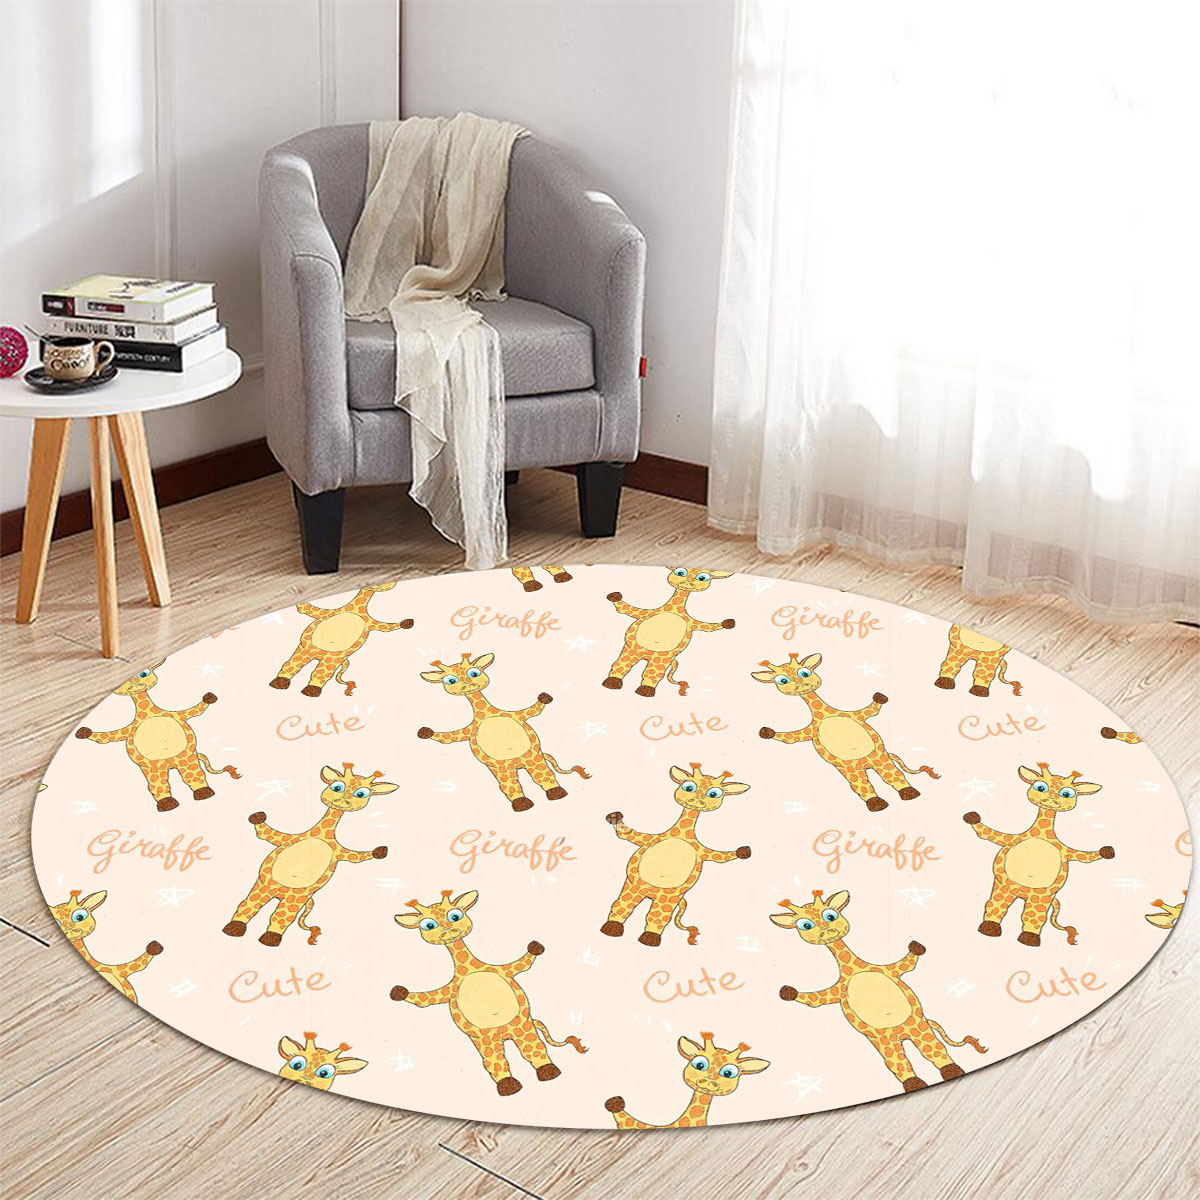 Cute Giraffe Round Carpet 6